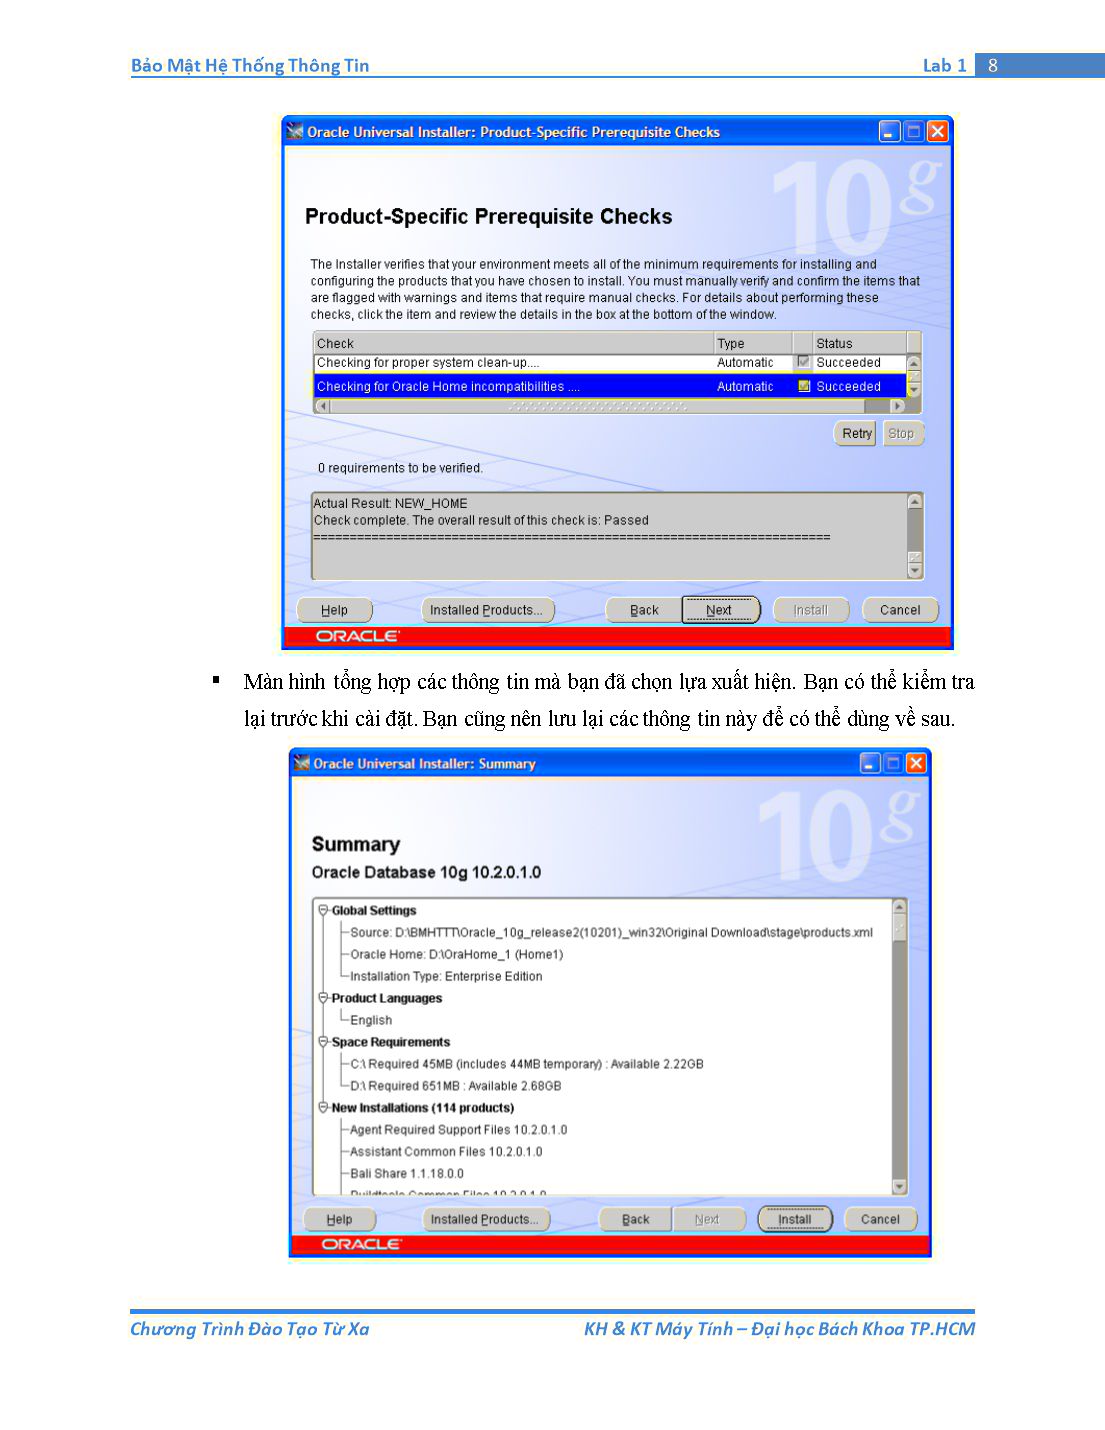 Tài liệu thực hành Bảo mật hệ thống thông tin - Bài thực hành số 1: Tổng quan về Oracle Database trang 8